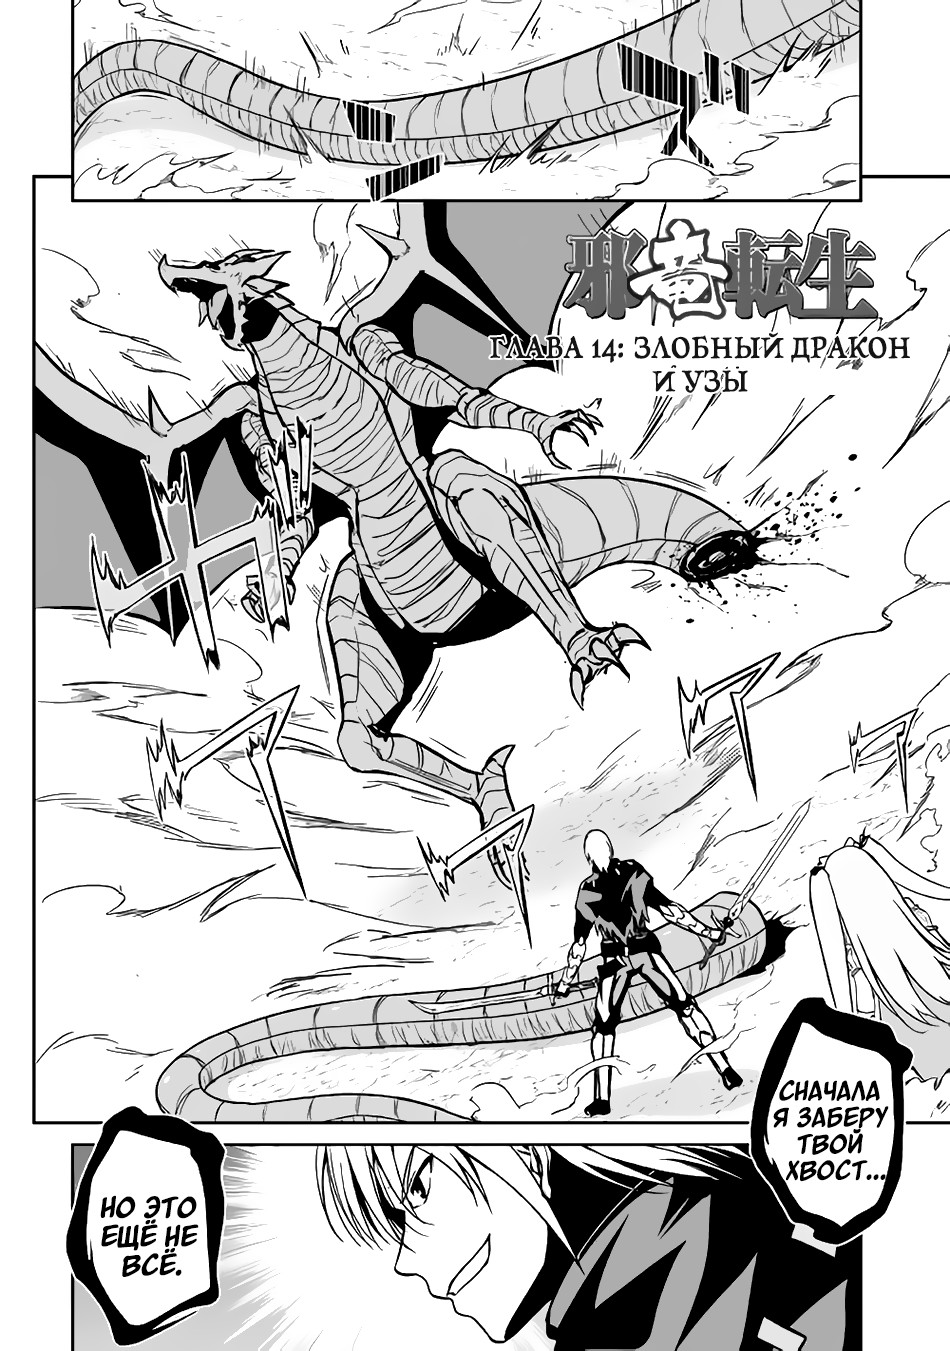 Реинкарнация Злобного дракона 3 - 14 Злобный дракон и узы